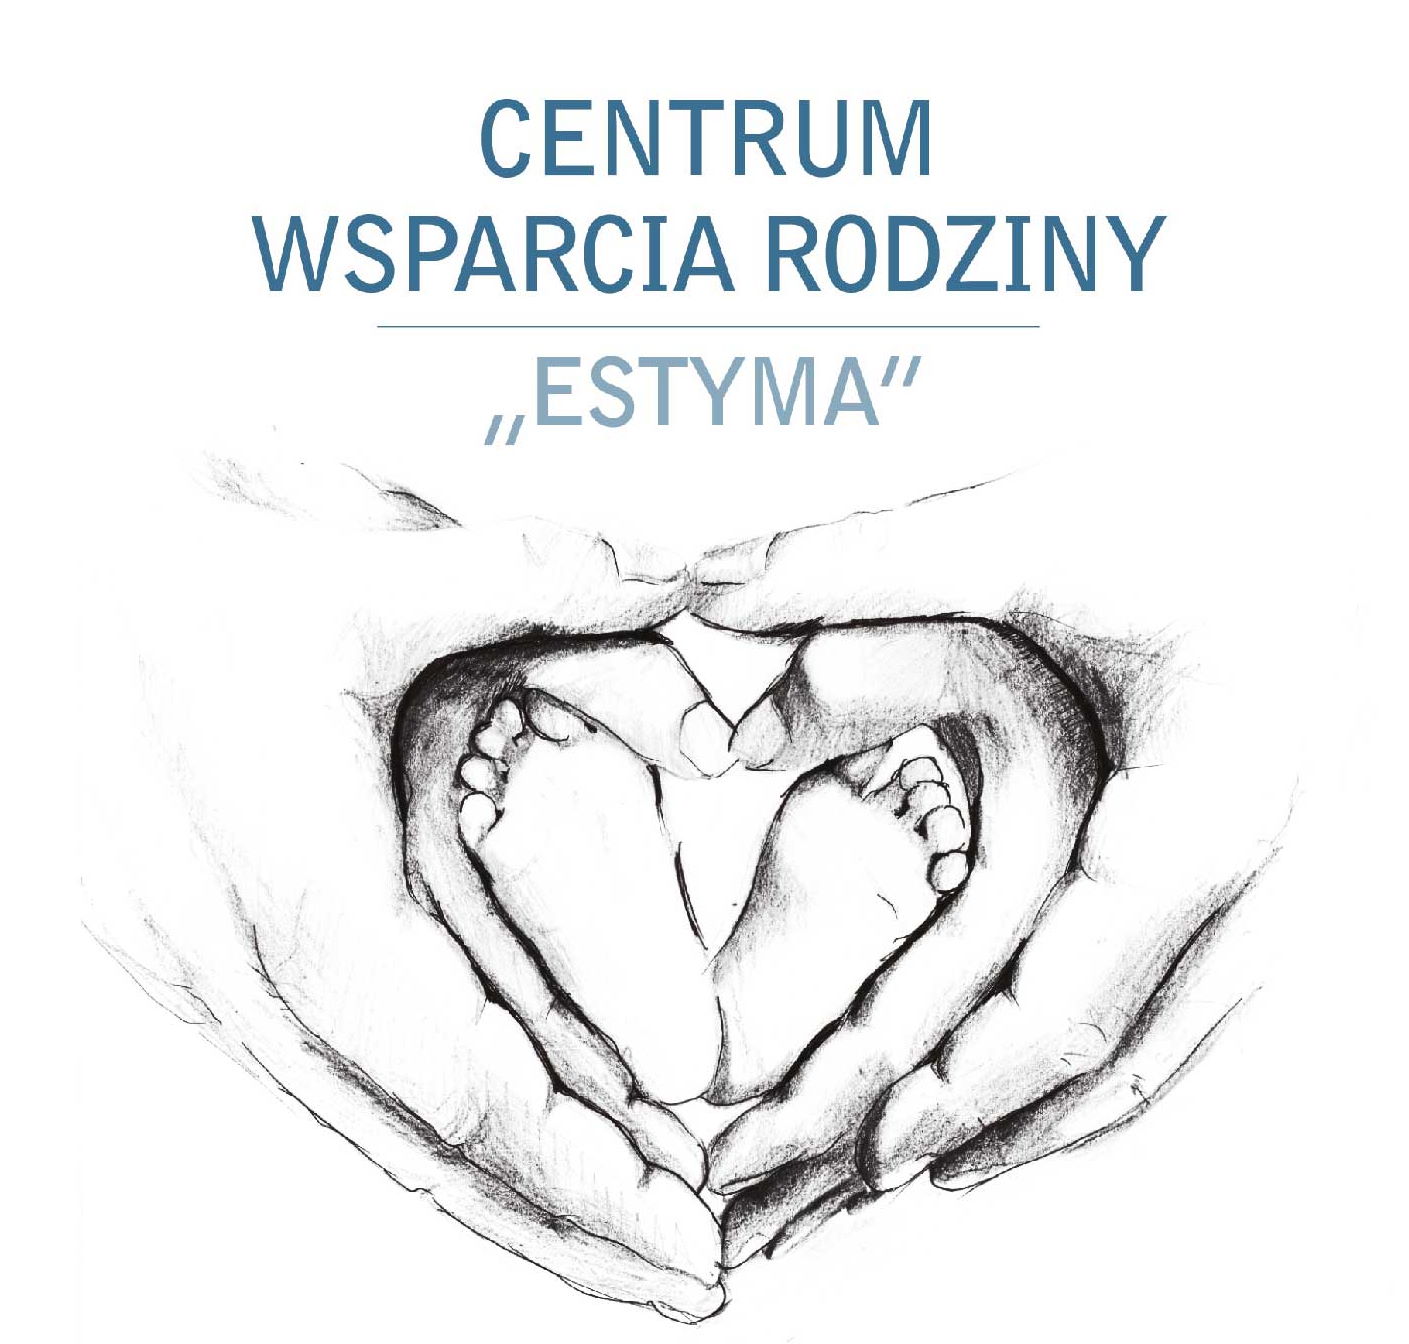 CENTRUM WSPARCIA RODZINY "ESTYMA"